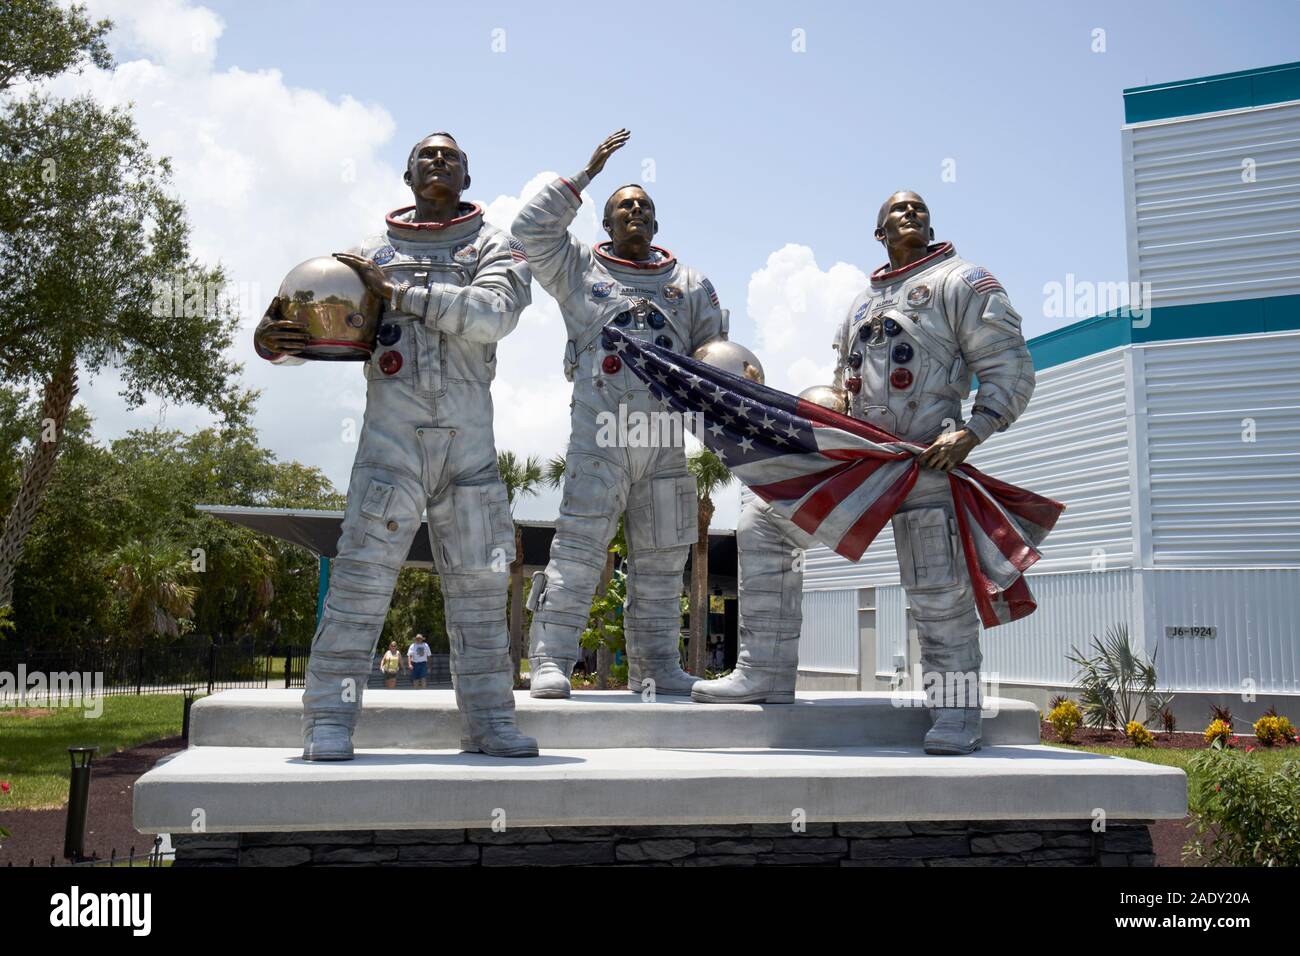 Scultura in bronzo della NASA Apollo 11 astronauti Neil Armstrong e Buzz Aldrin e Michael Collins in luna albero giardino Kennedy Space Center florida usa Foto Stock